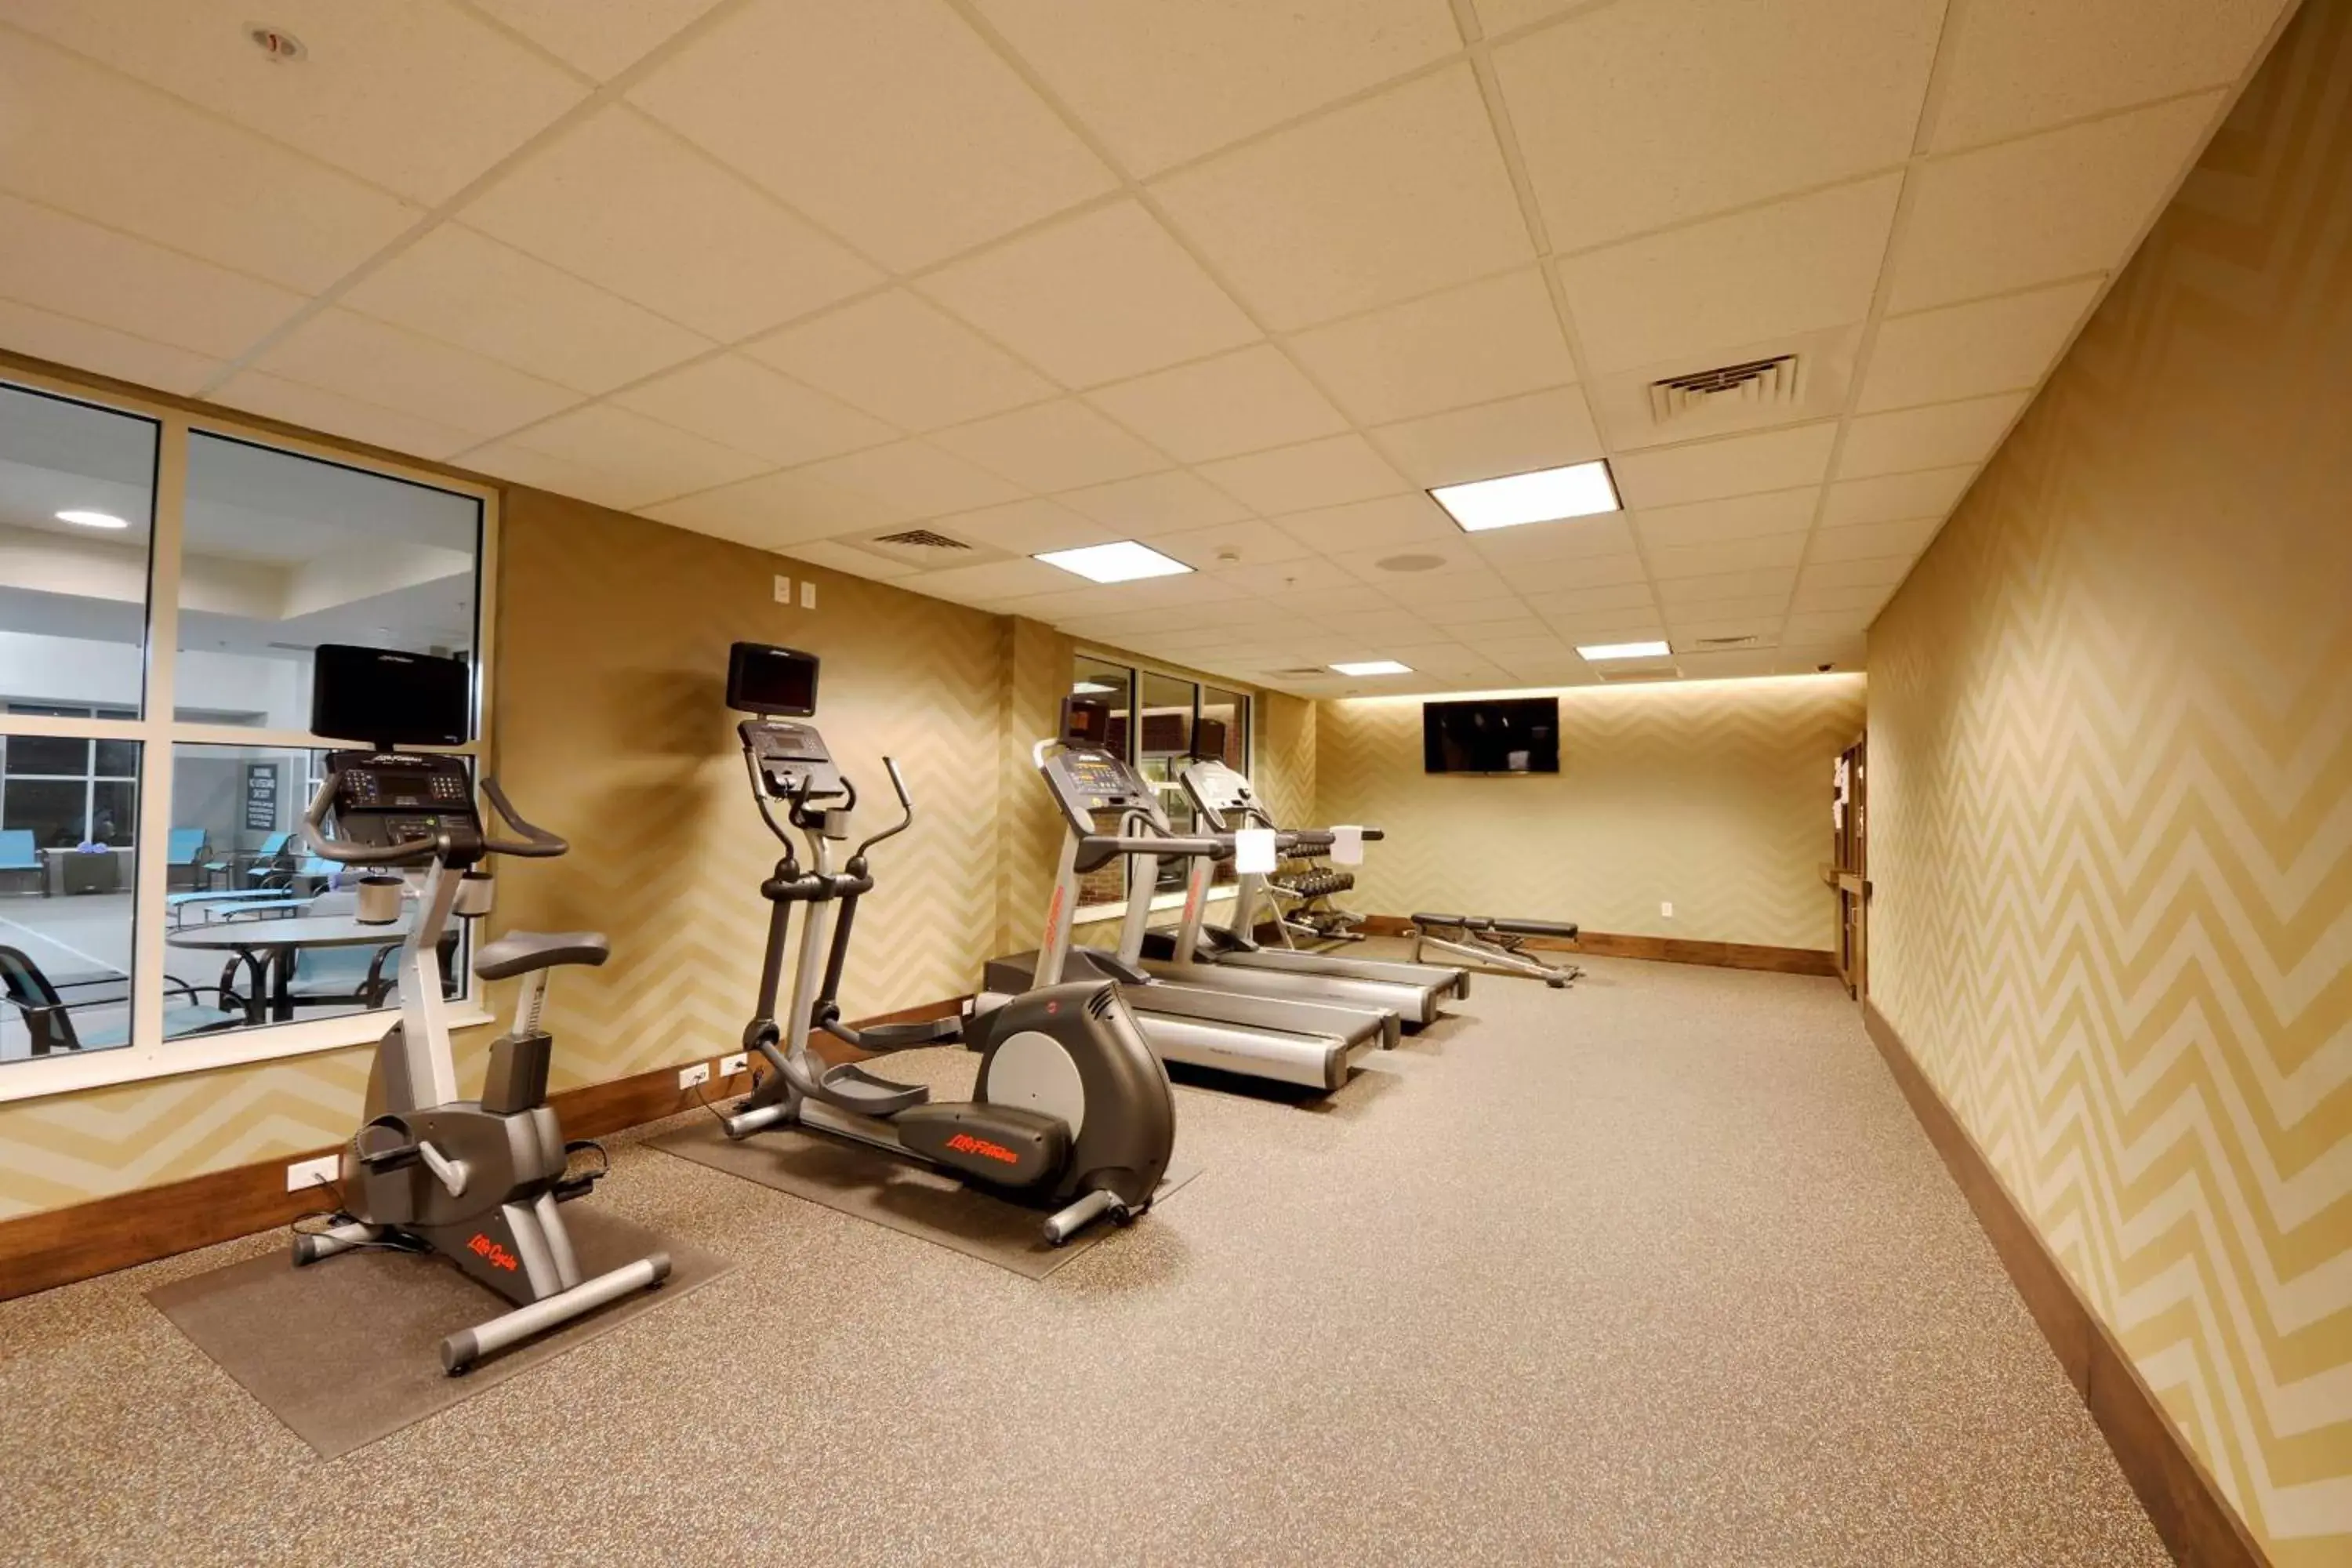 Fitness centre/facilities, Fitness Center/Facilities in Residence Inn by Marriott Omaha Aksarben Village